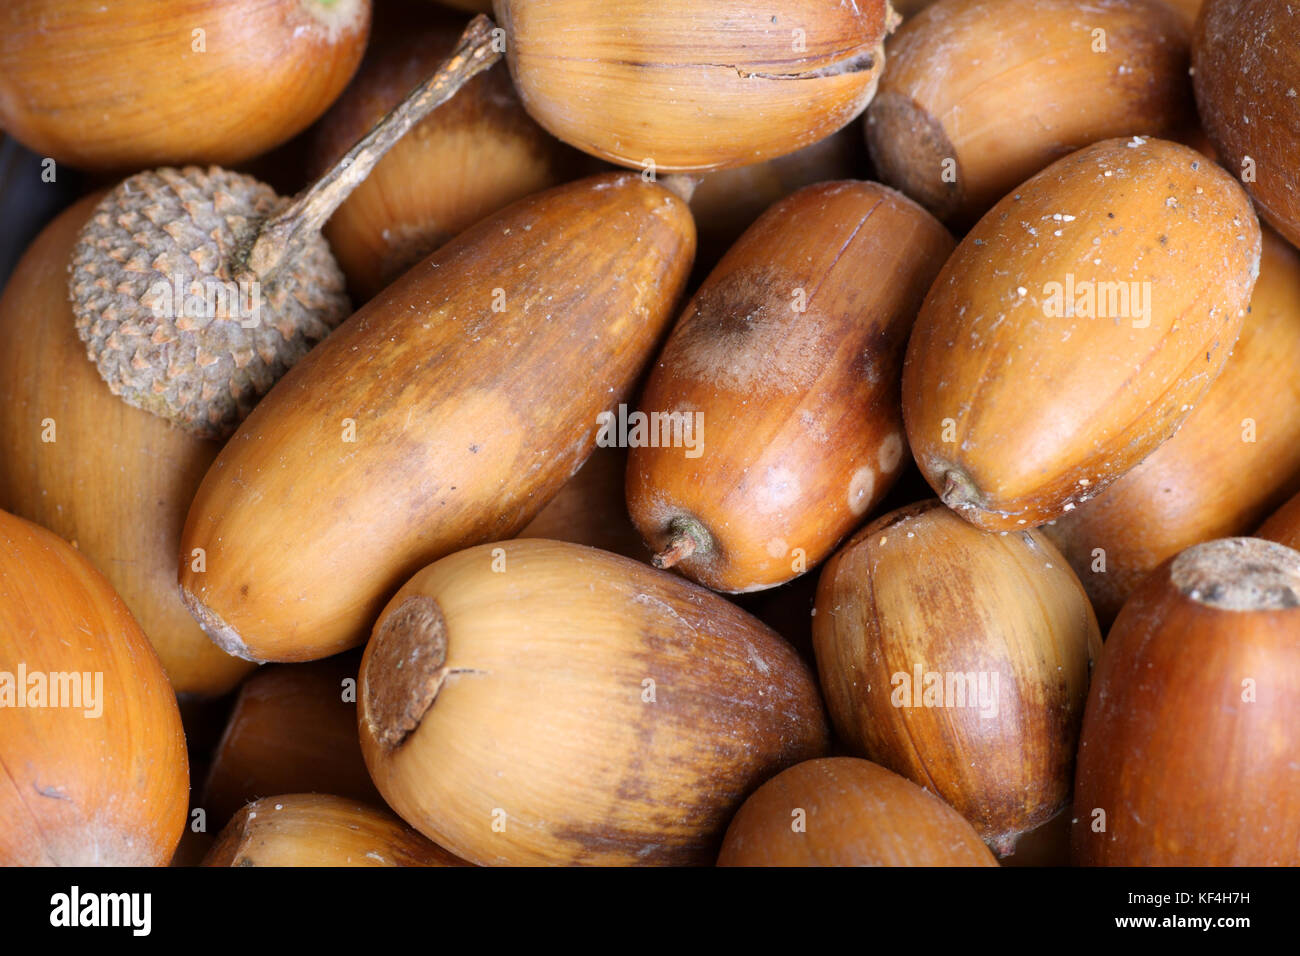 Fallen acorns from an oak tree, UK. Stock Photo